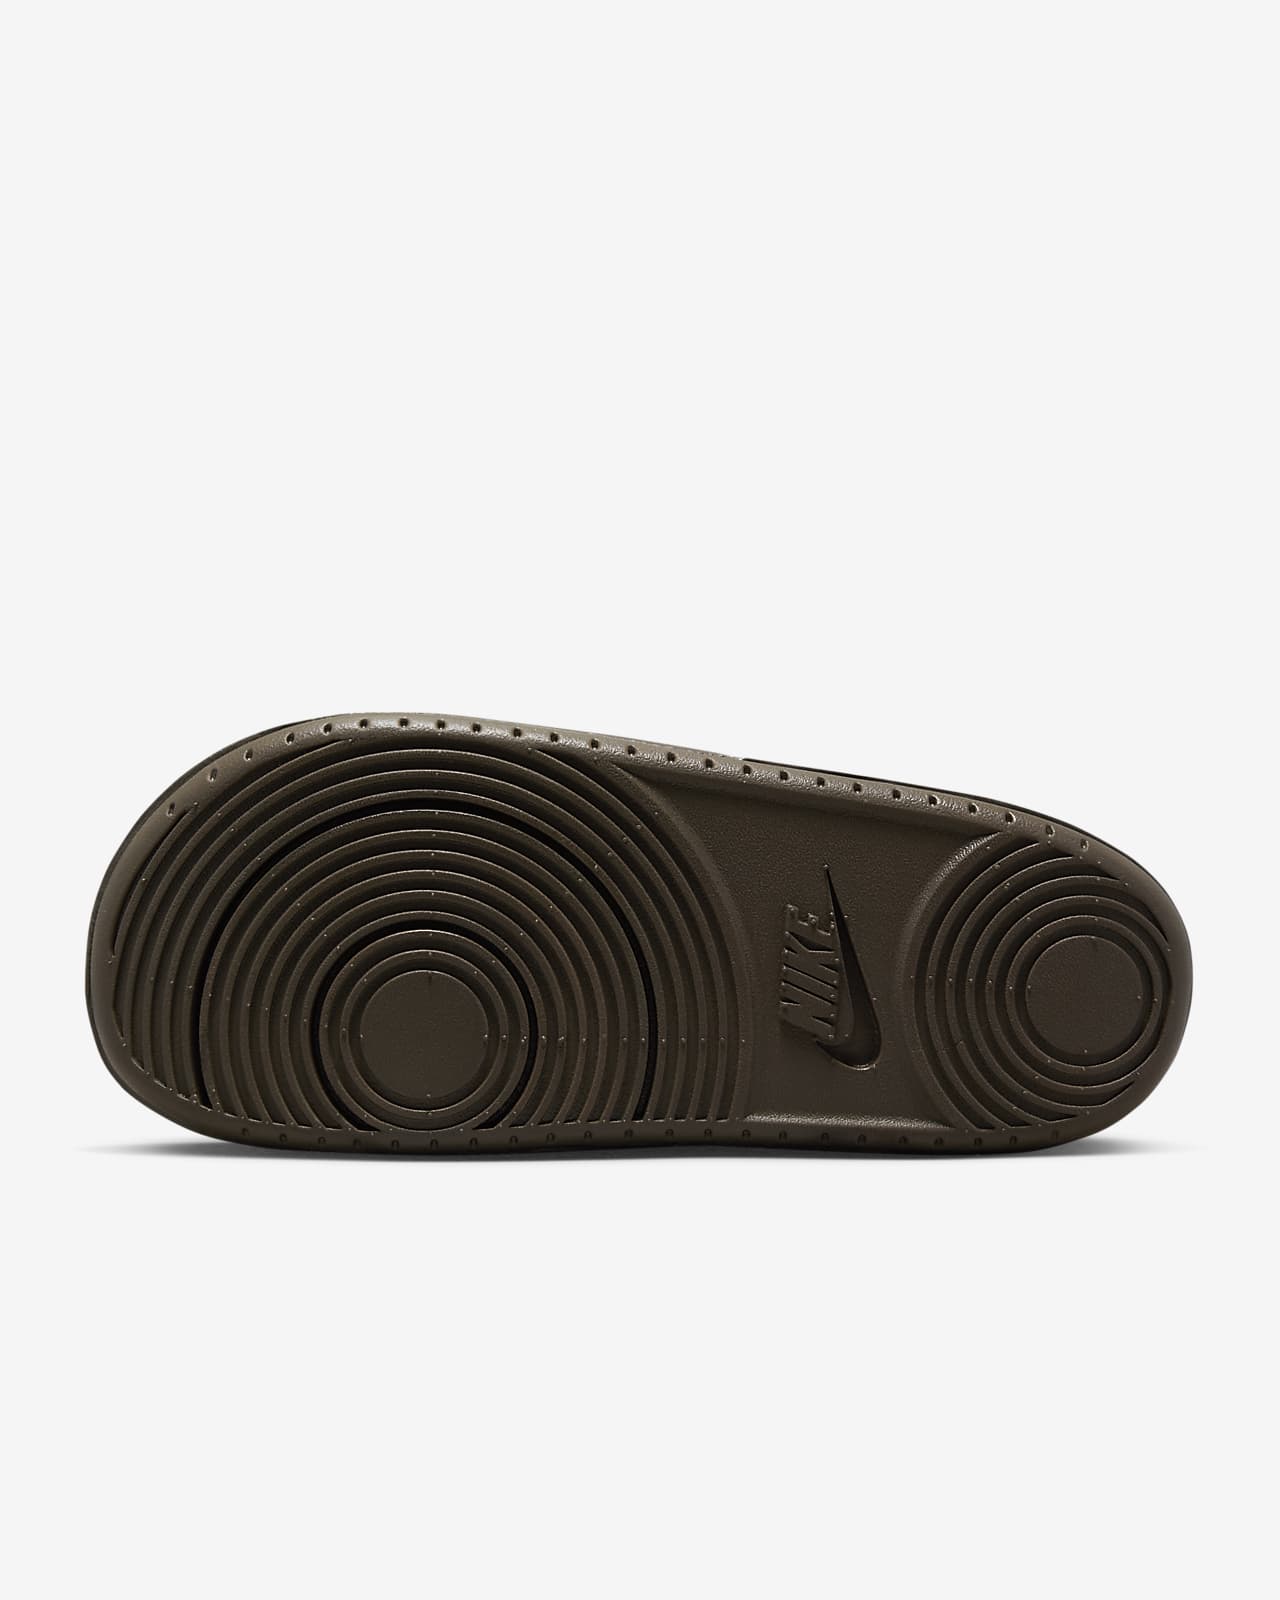 Nike Offcourt Men's Slide Sandals - Black/White